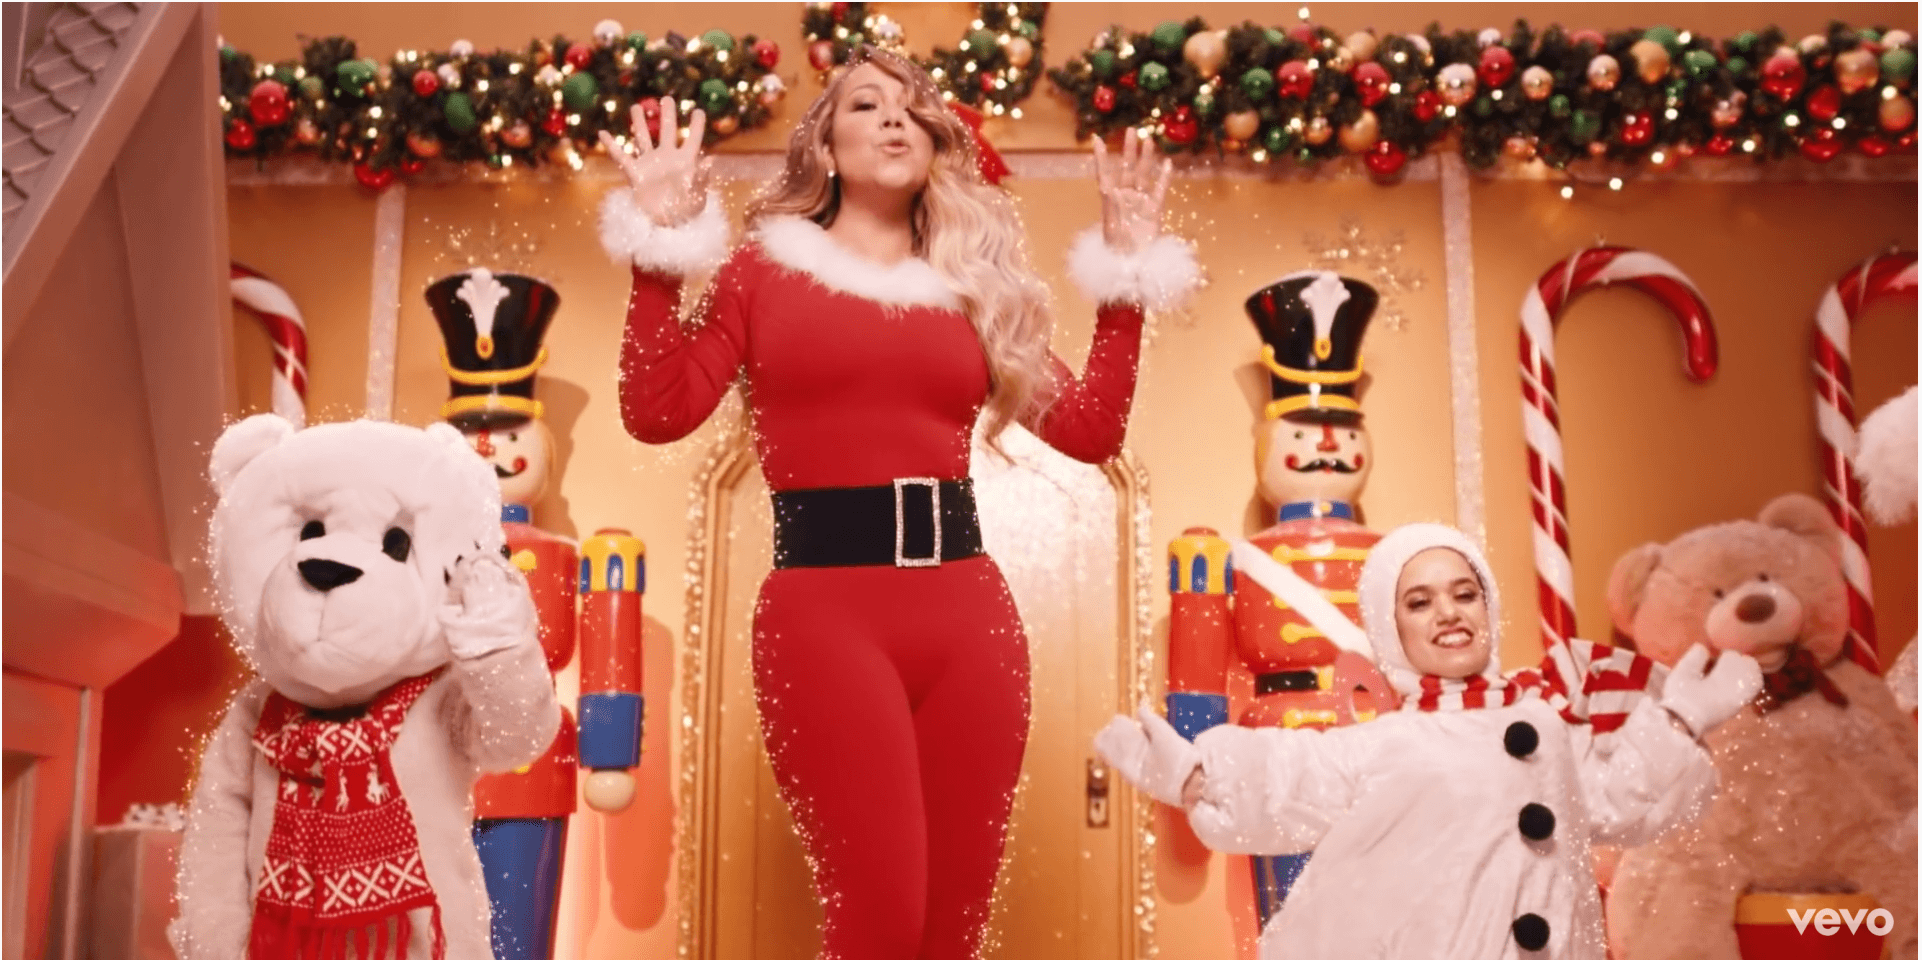 Mariah Carey celebra 25 años de “Merry Christmas”, su exitoso álbum navideño